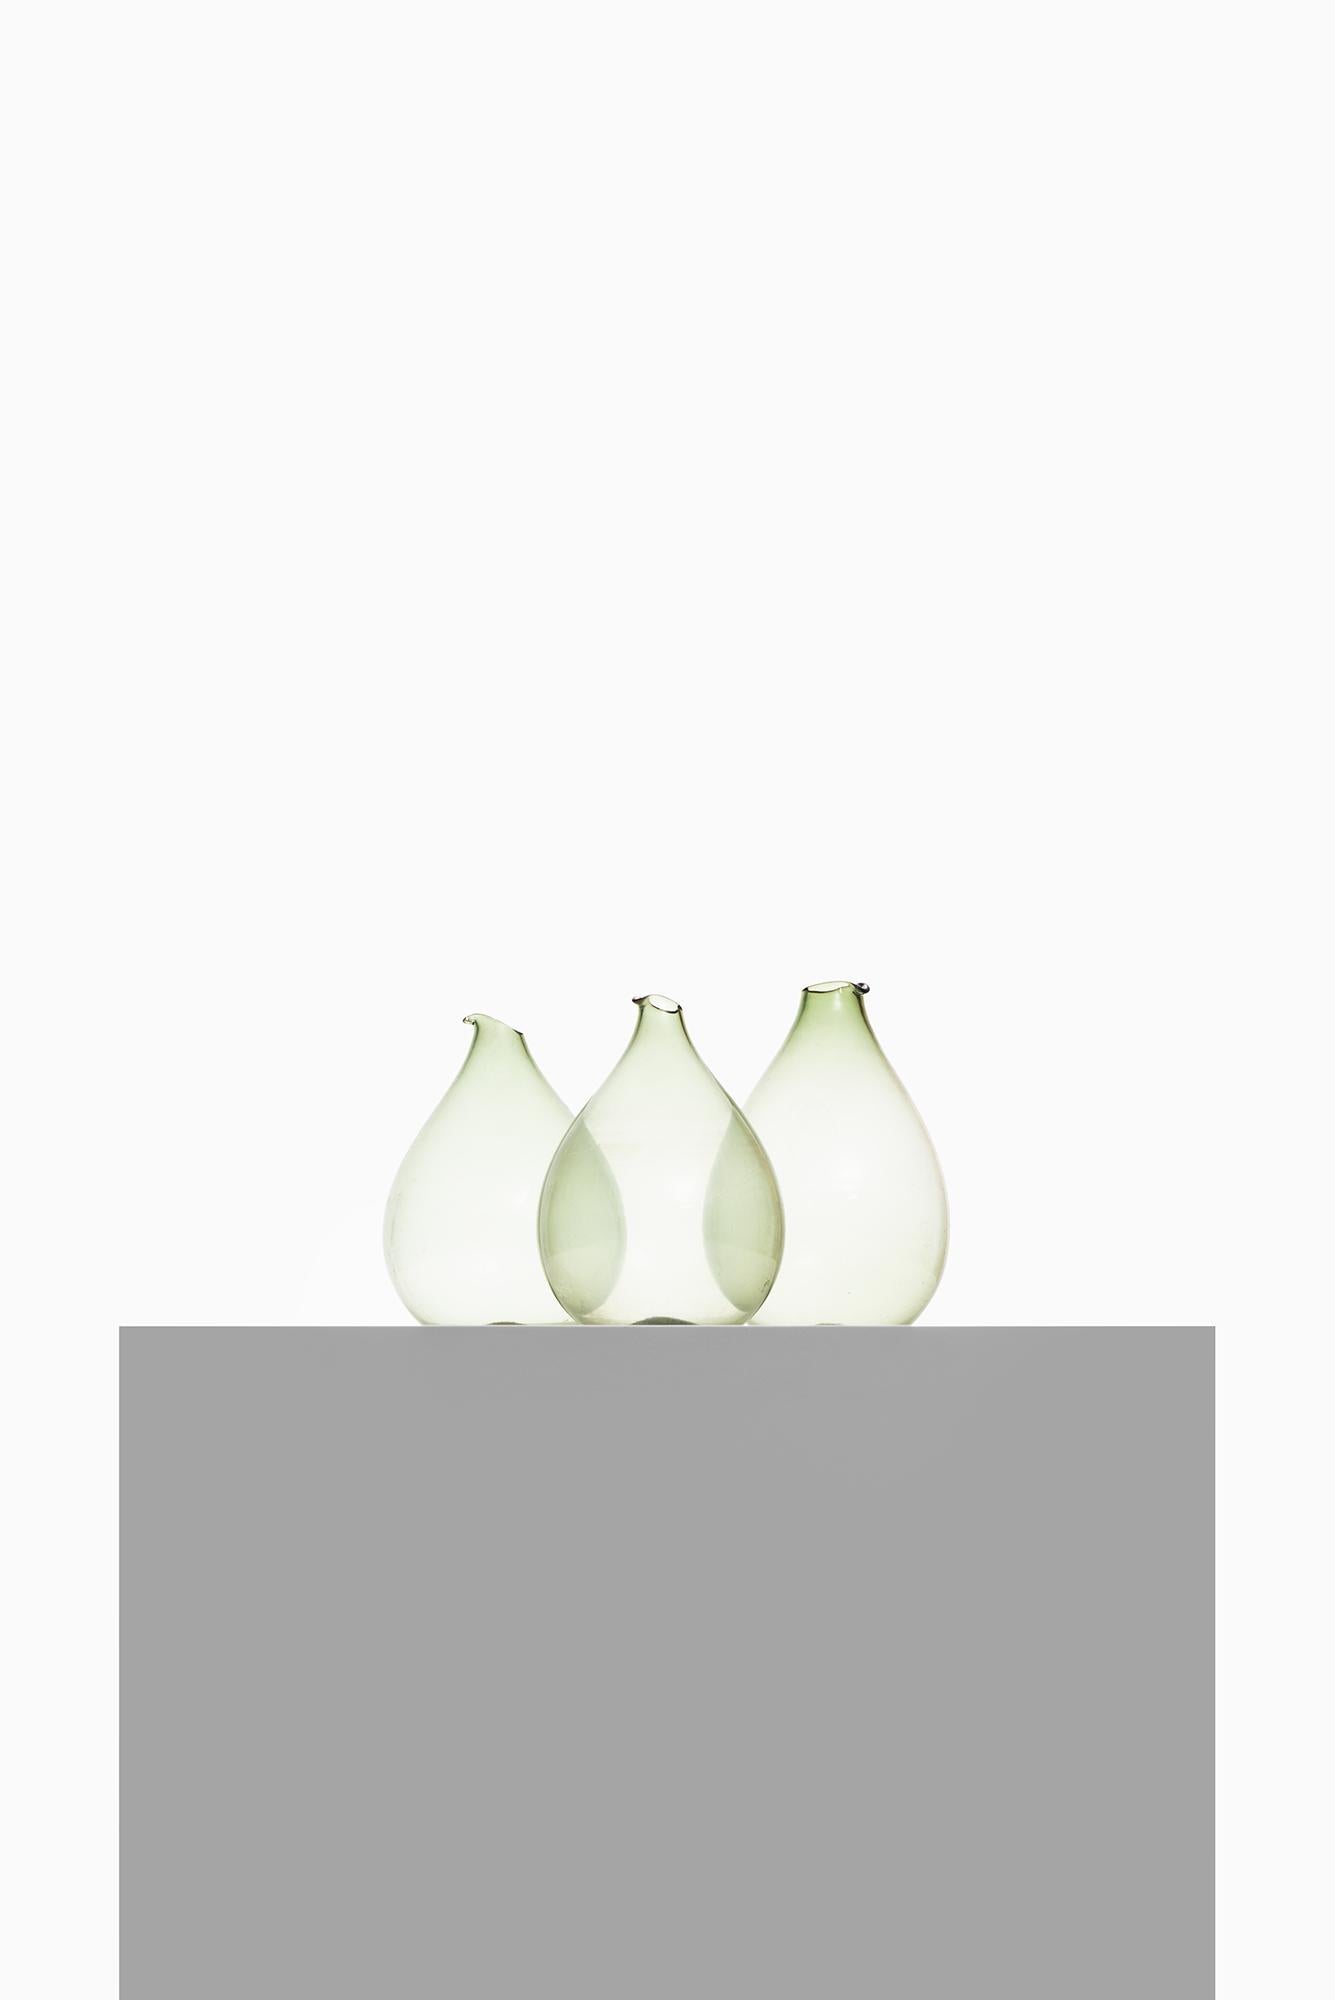 Scandinavian Modern Kjell Blomberg Glass Vases by Gullaskruf in Sweden